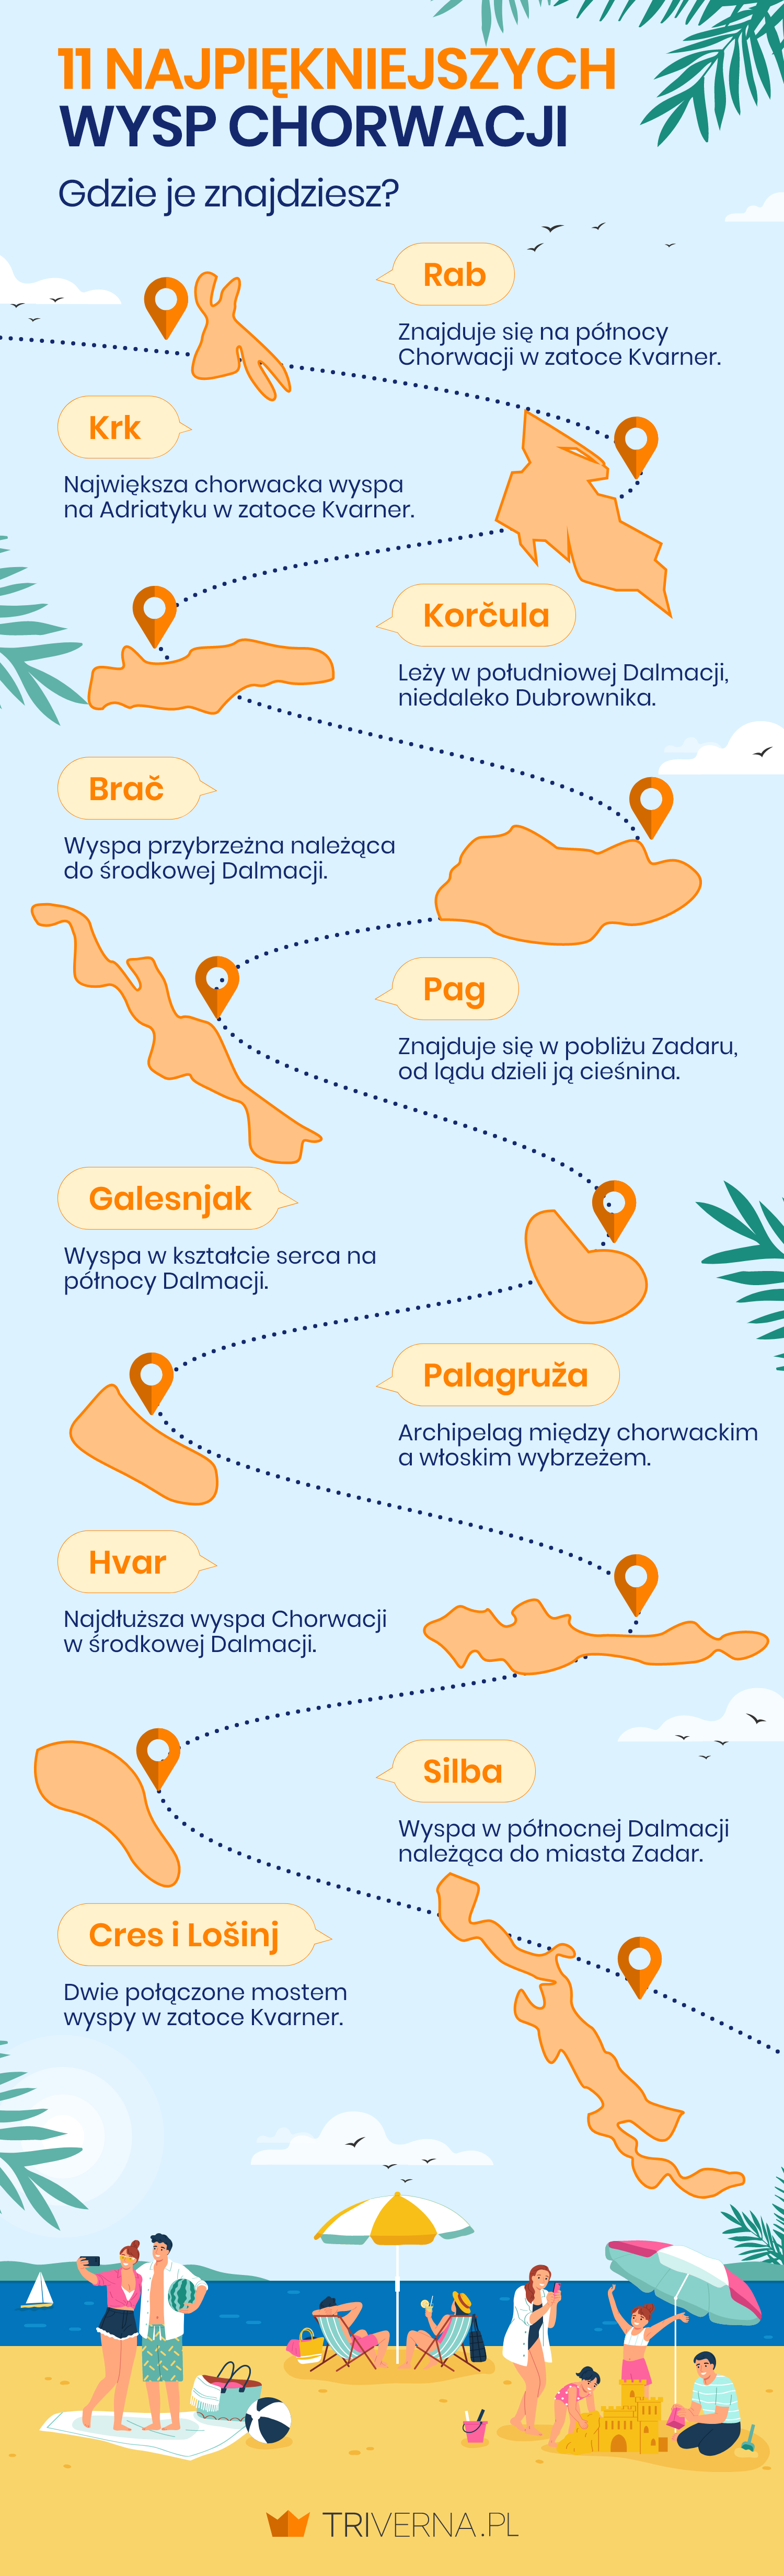 Najpiękniejsze wyspy Chorwacji - infografika